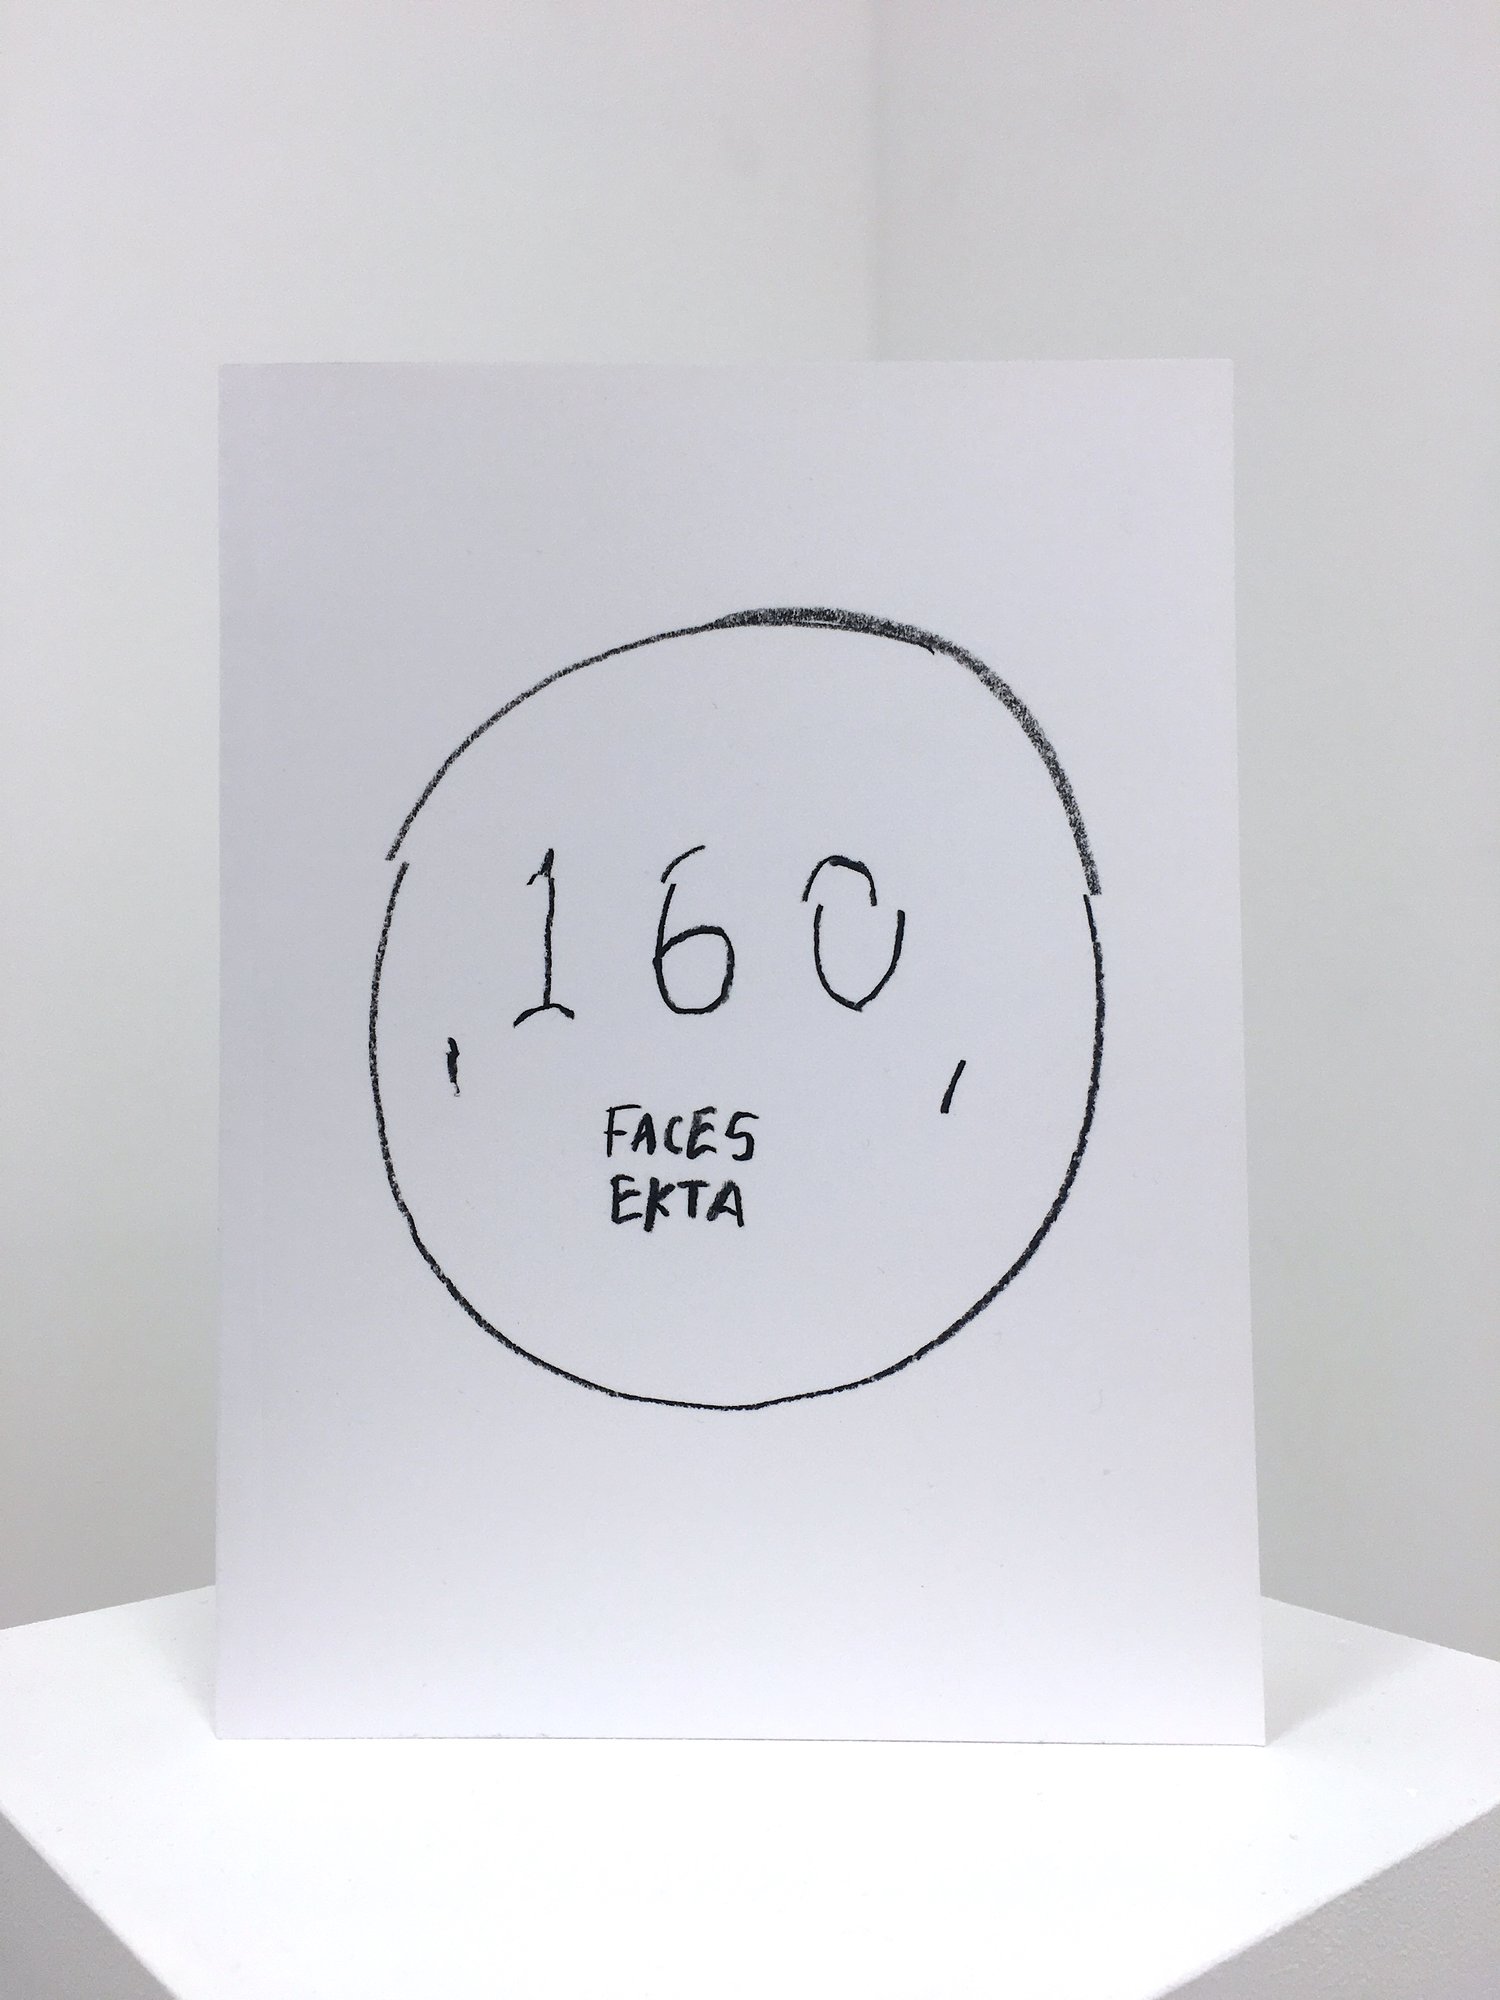 Ekta - "160 Faces"